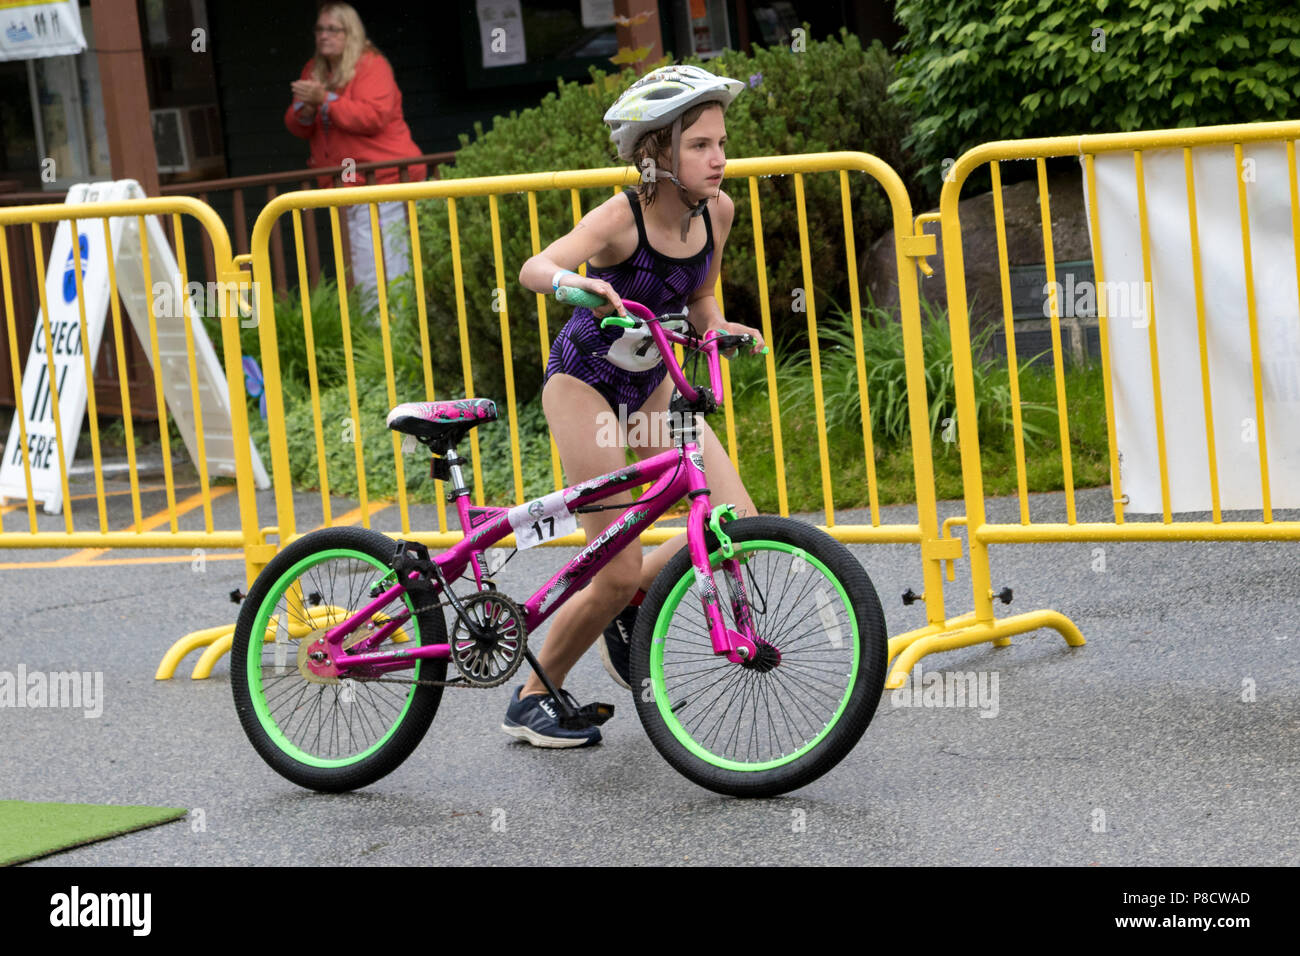 Samantha Scheungrab durante el segmento de bicicleta 10-11 grupo del 2018 haya resistencia Festiva Kid's triatlón Foto de stock